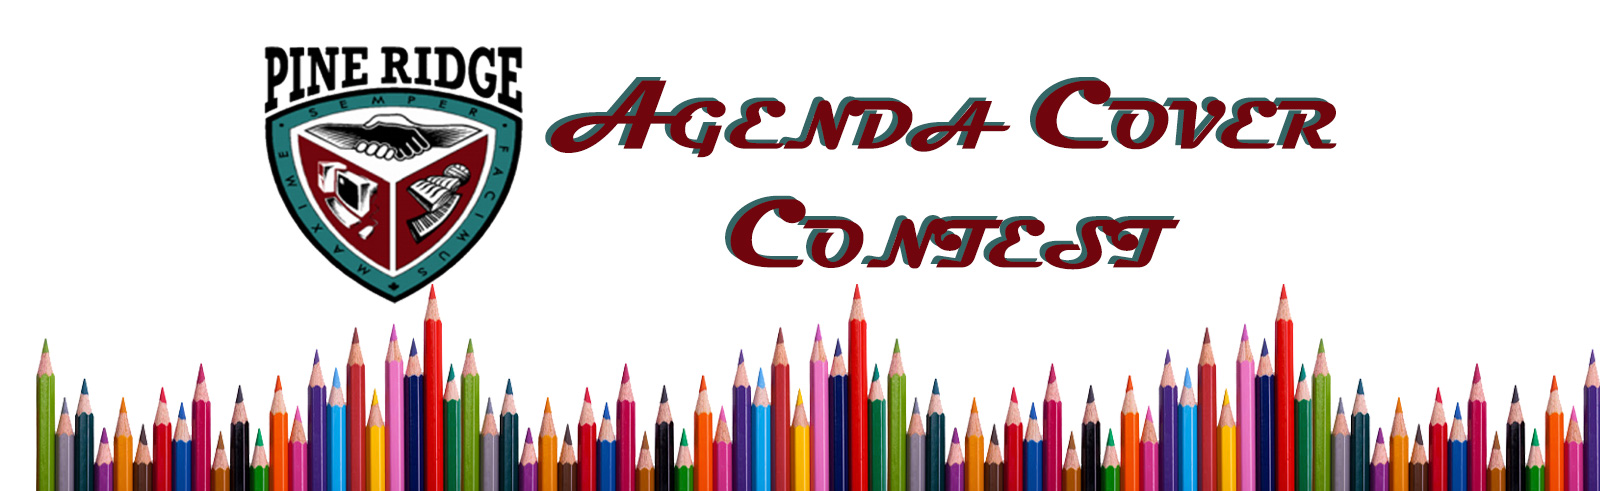 Pine Ridge Agenda Cover Contest